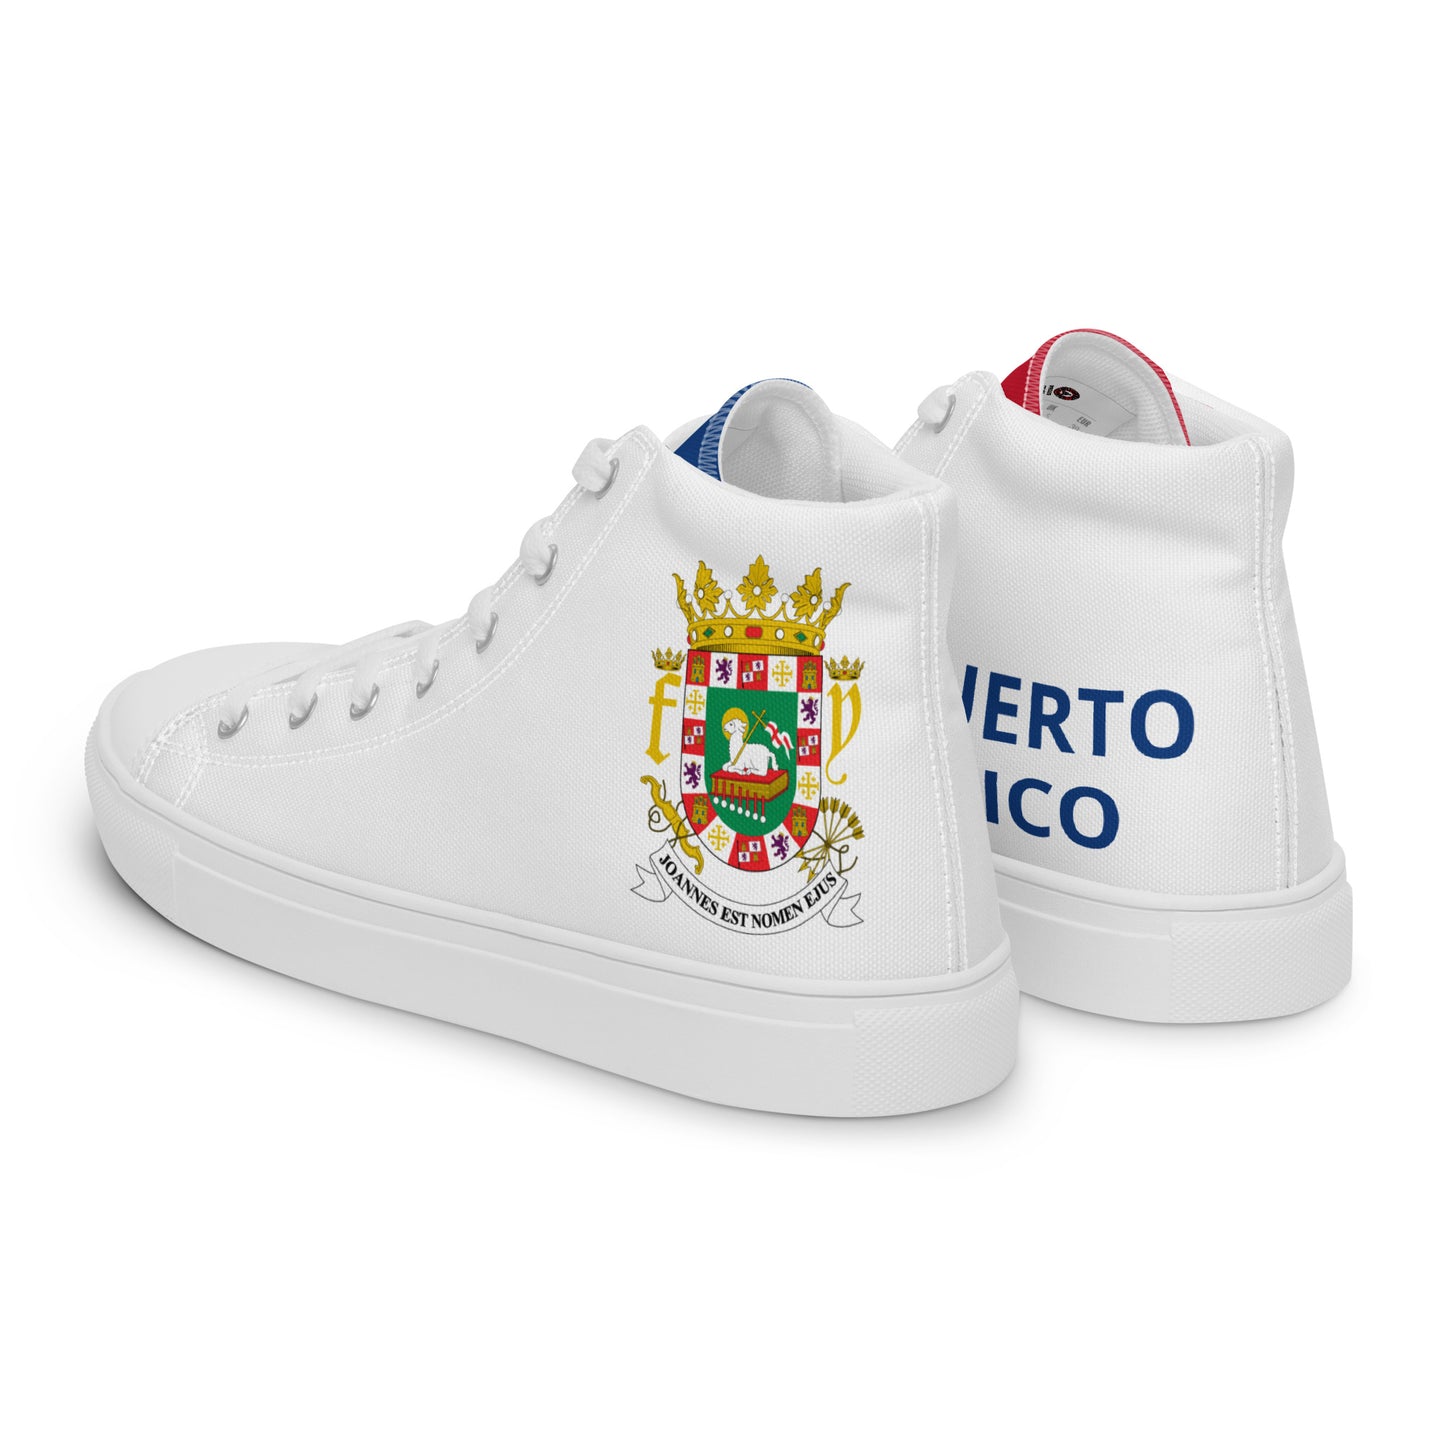 Puerto Rico - Mujer - Blanco - Zapatos High top